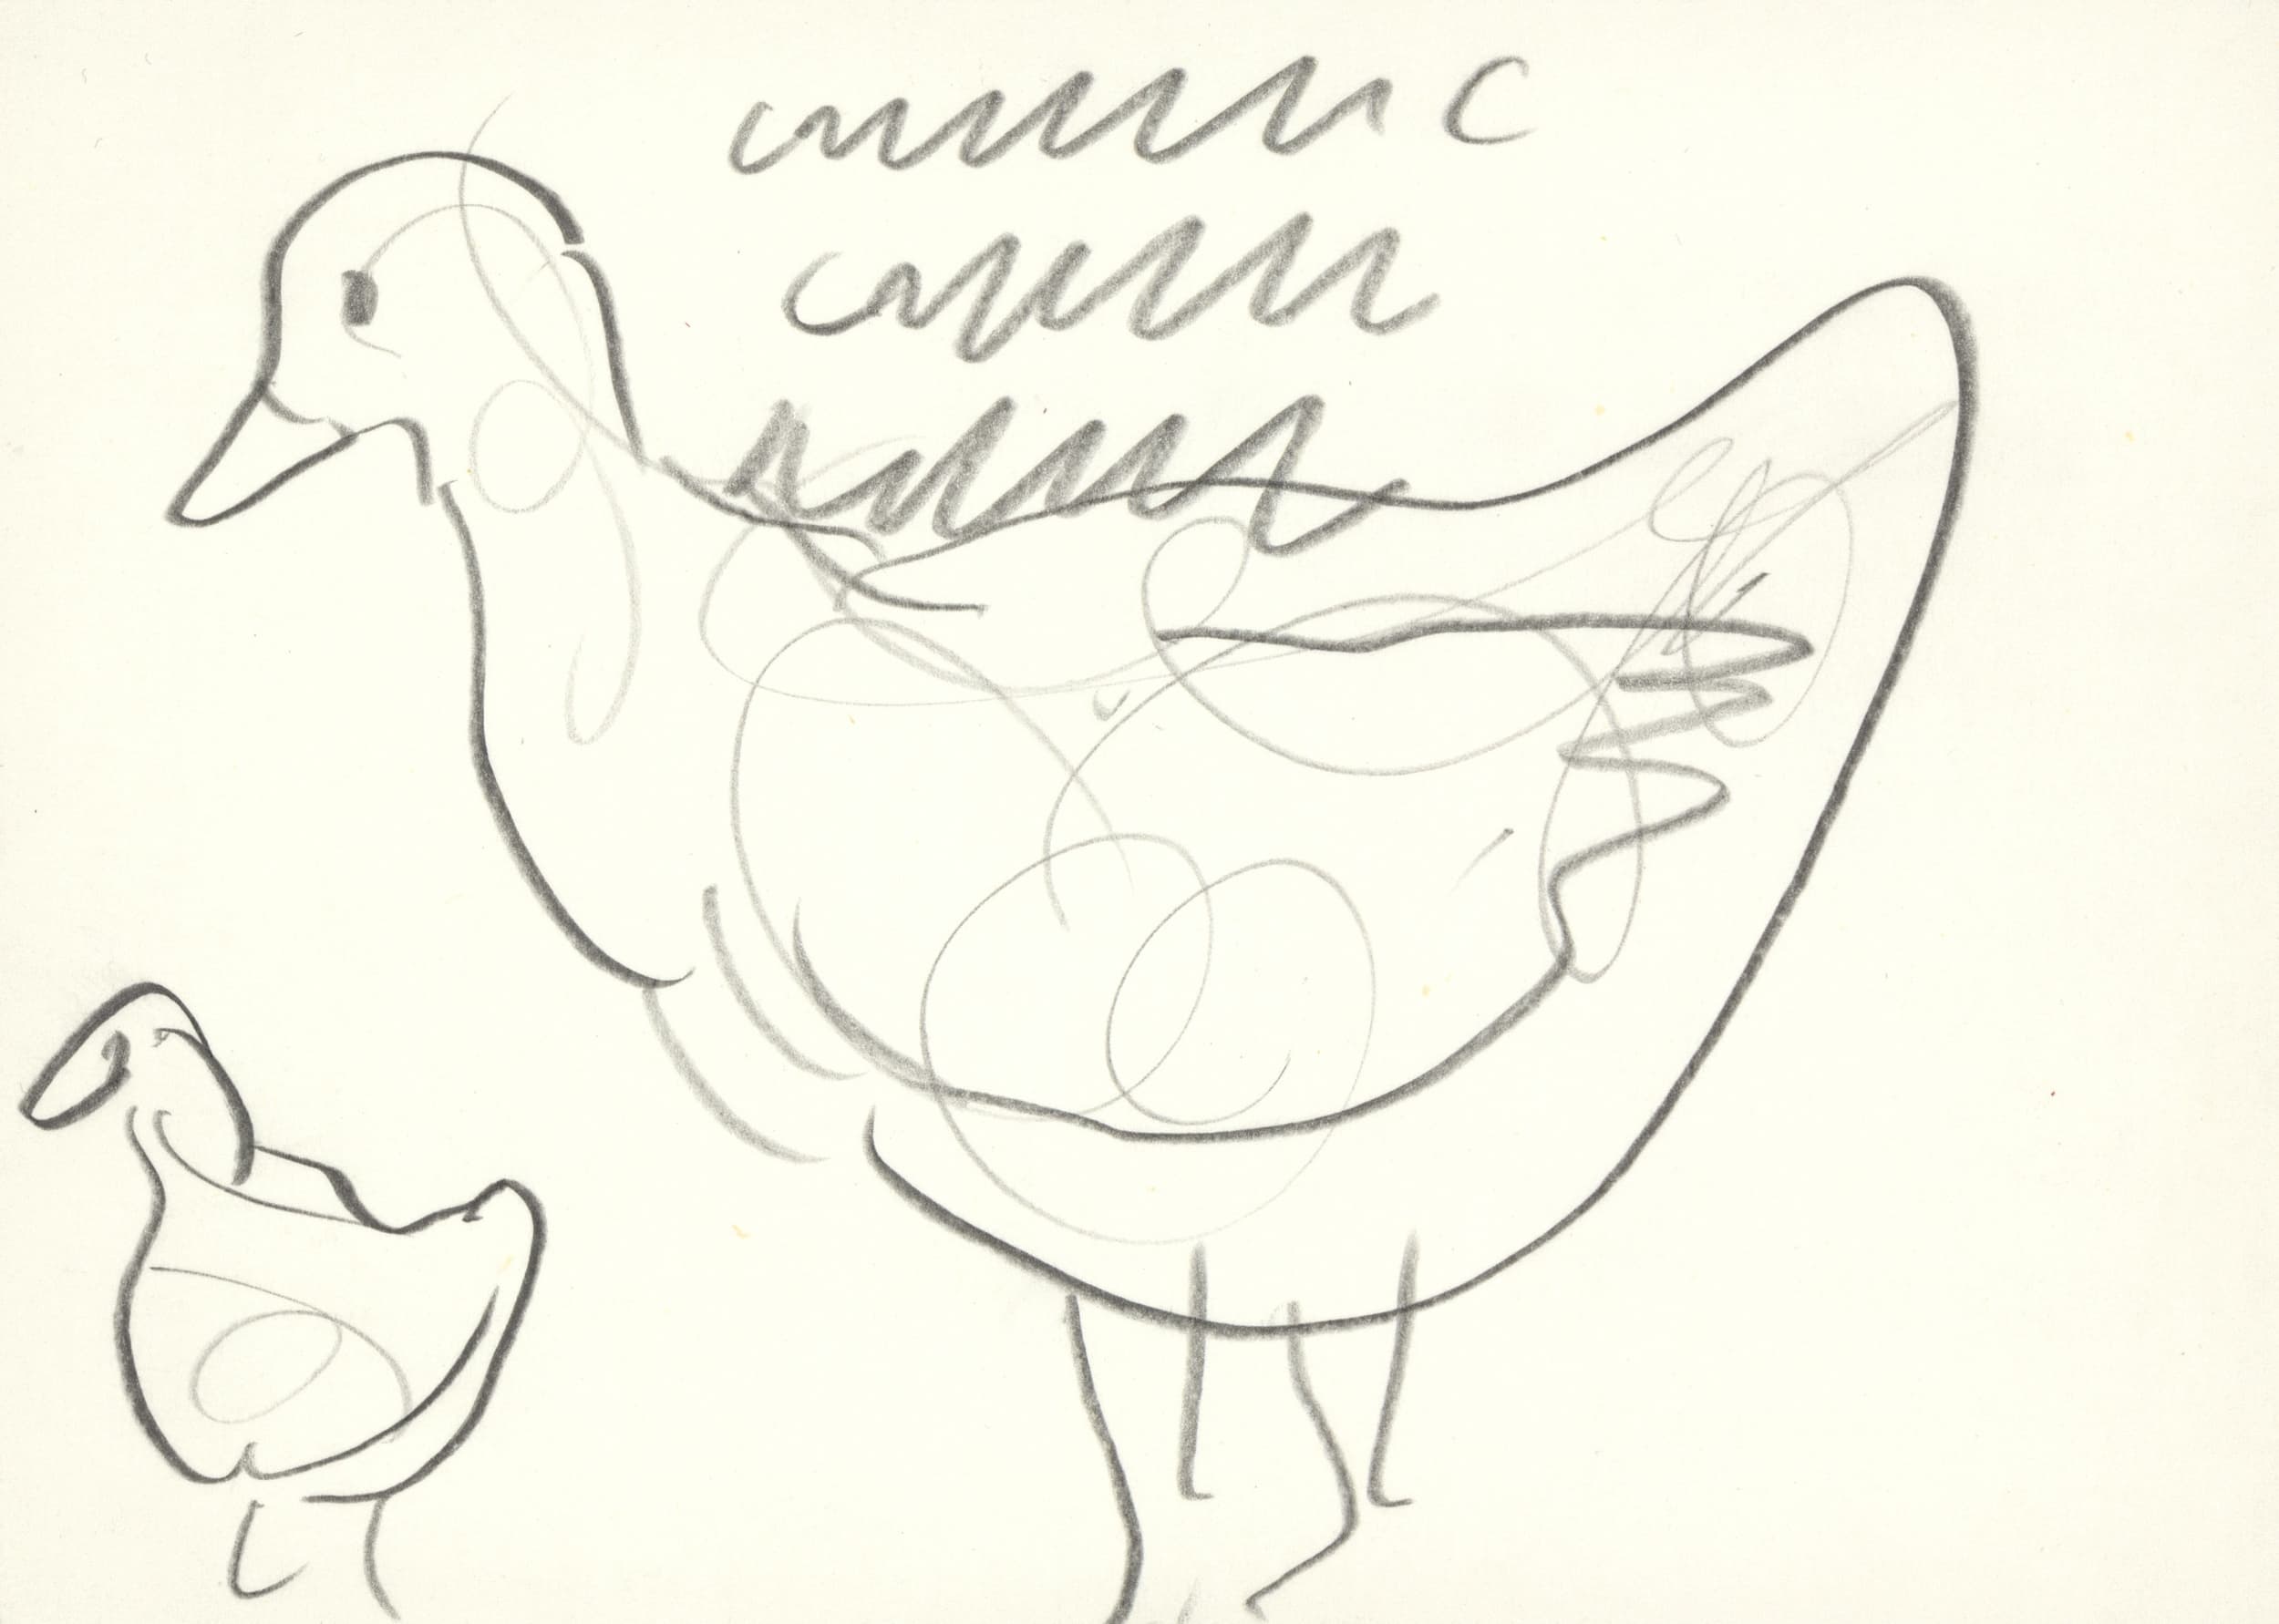 kamlander franz - Enten / Ducks